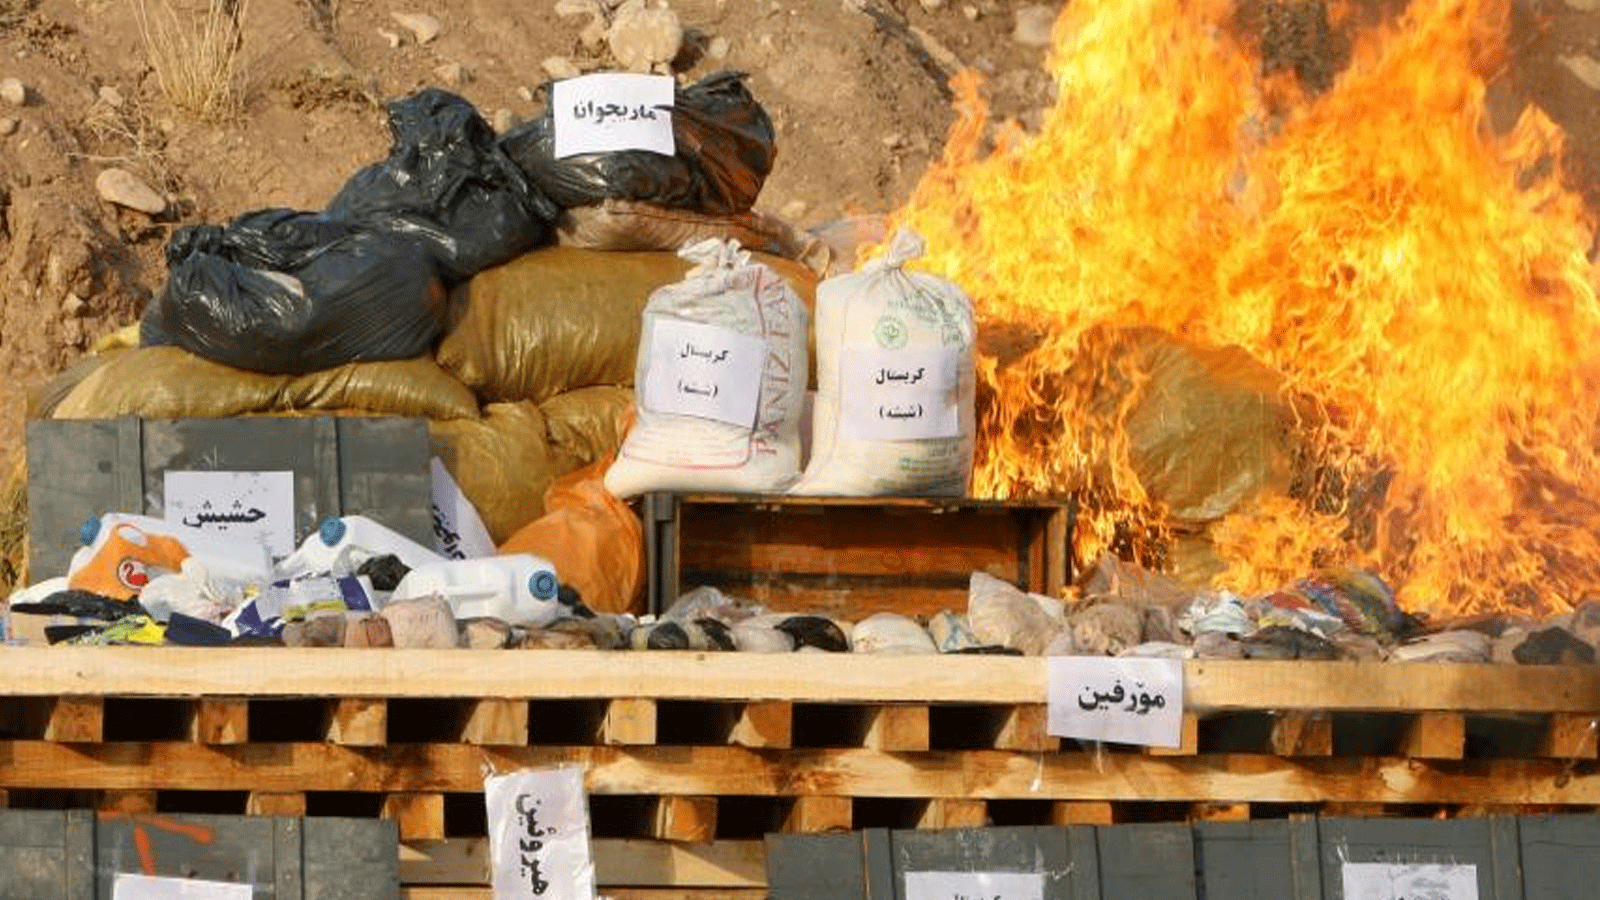 صورة أرشيفية لمخدرات مضبوطة تحرقها قوات الأمن الكردية العراقية في مدينة أربيل الشمالية، العراق.